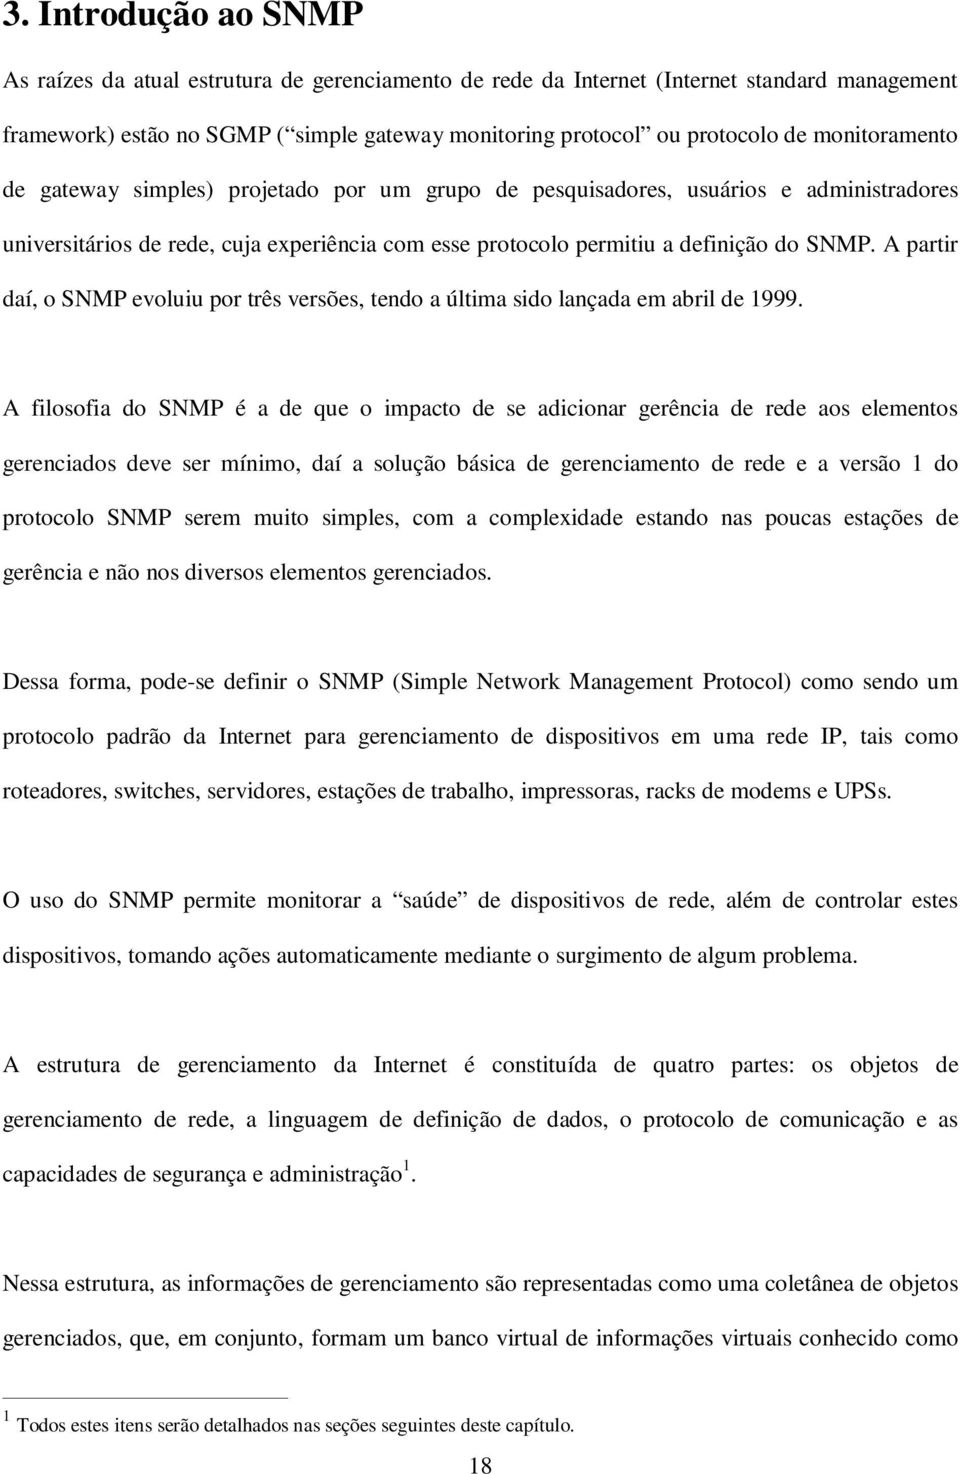 A partir daí, o SNMP evoluiu por três versões, tendo a última sido lançada em abril de 1999.